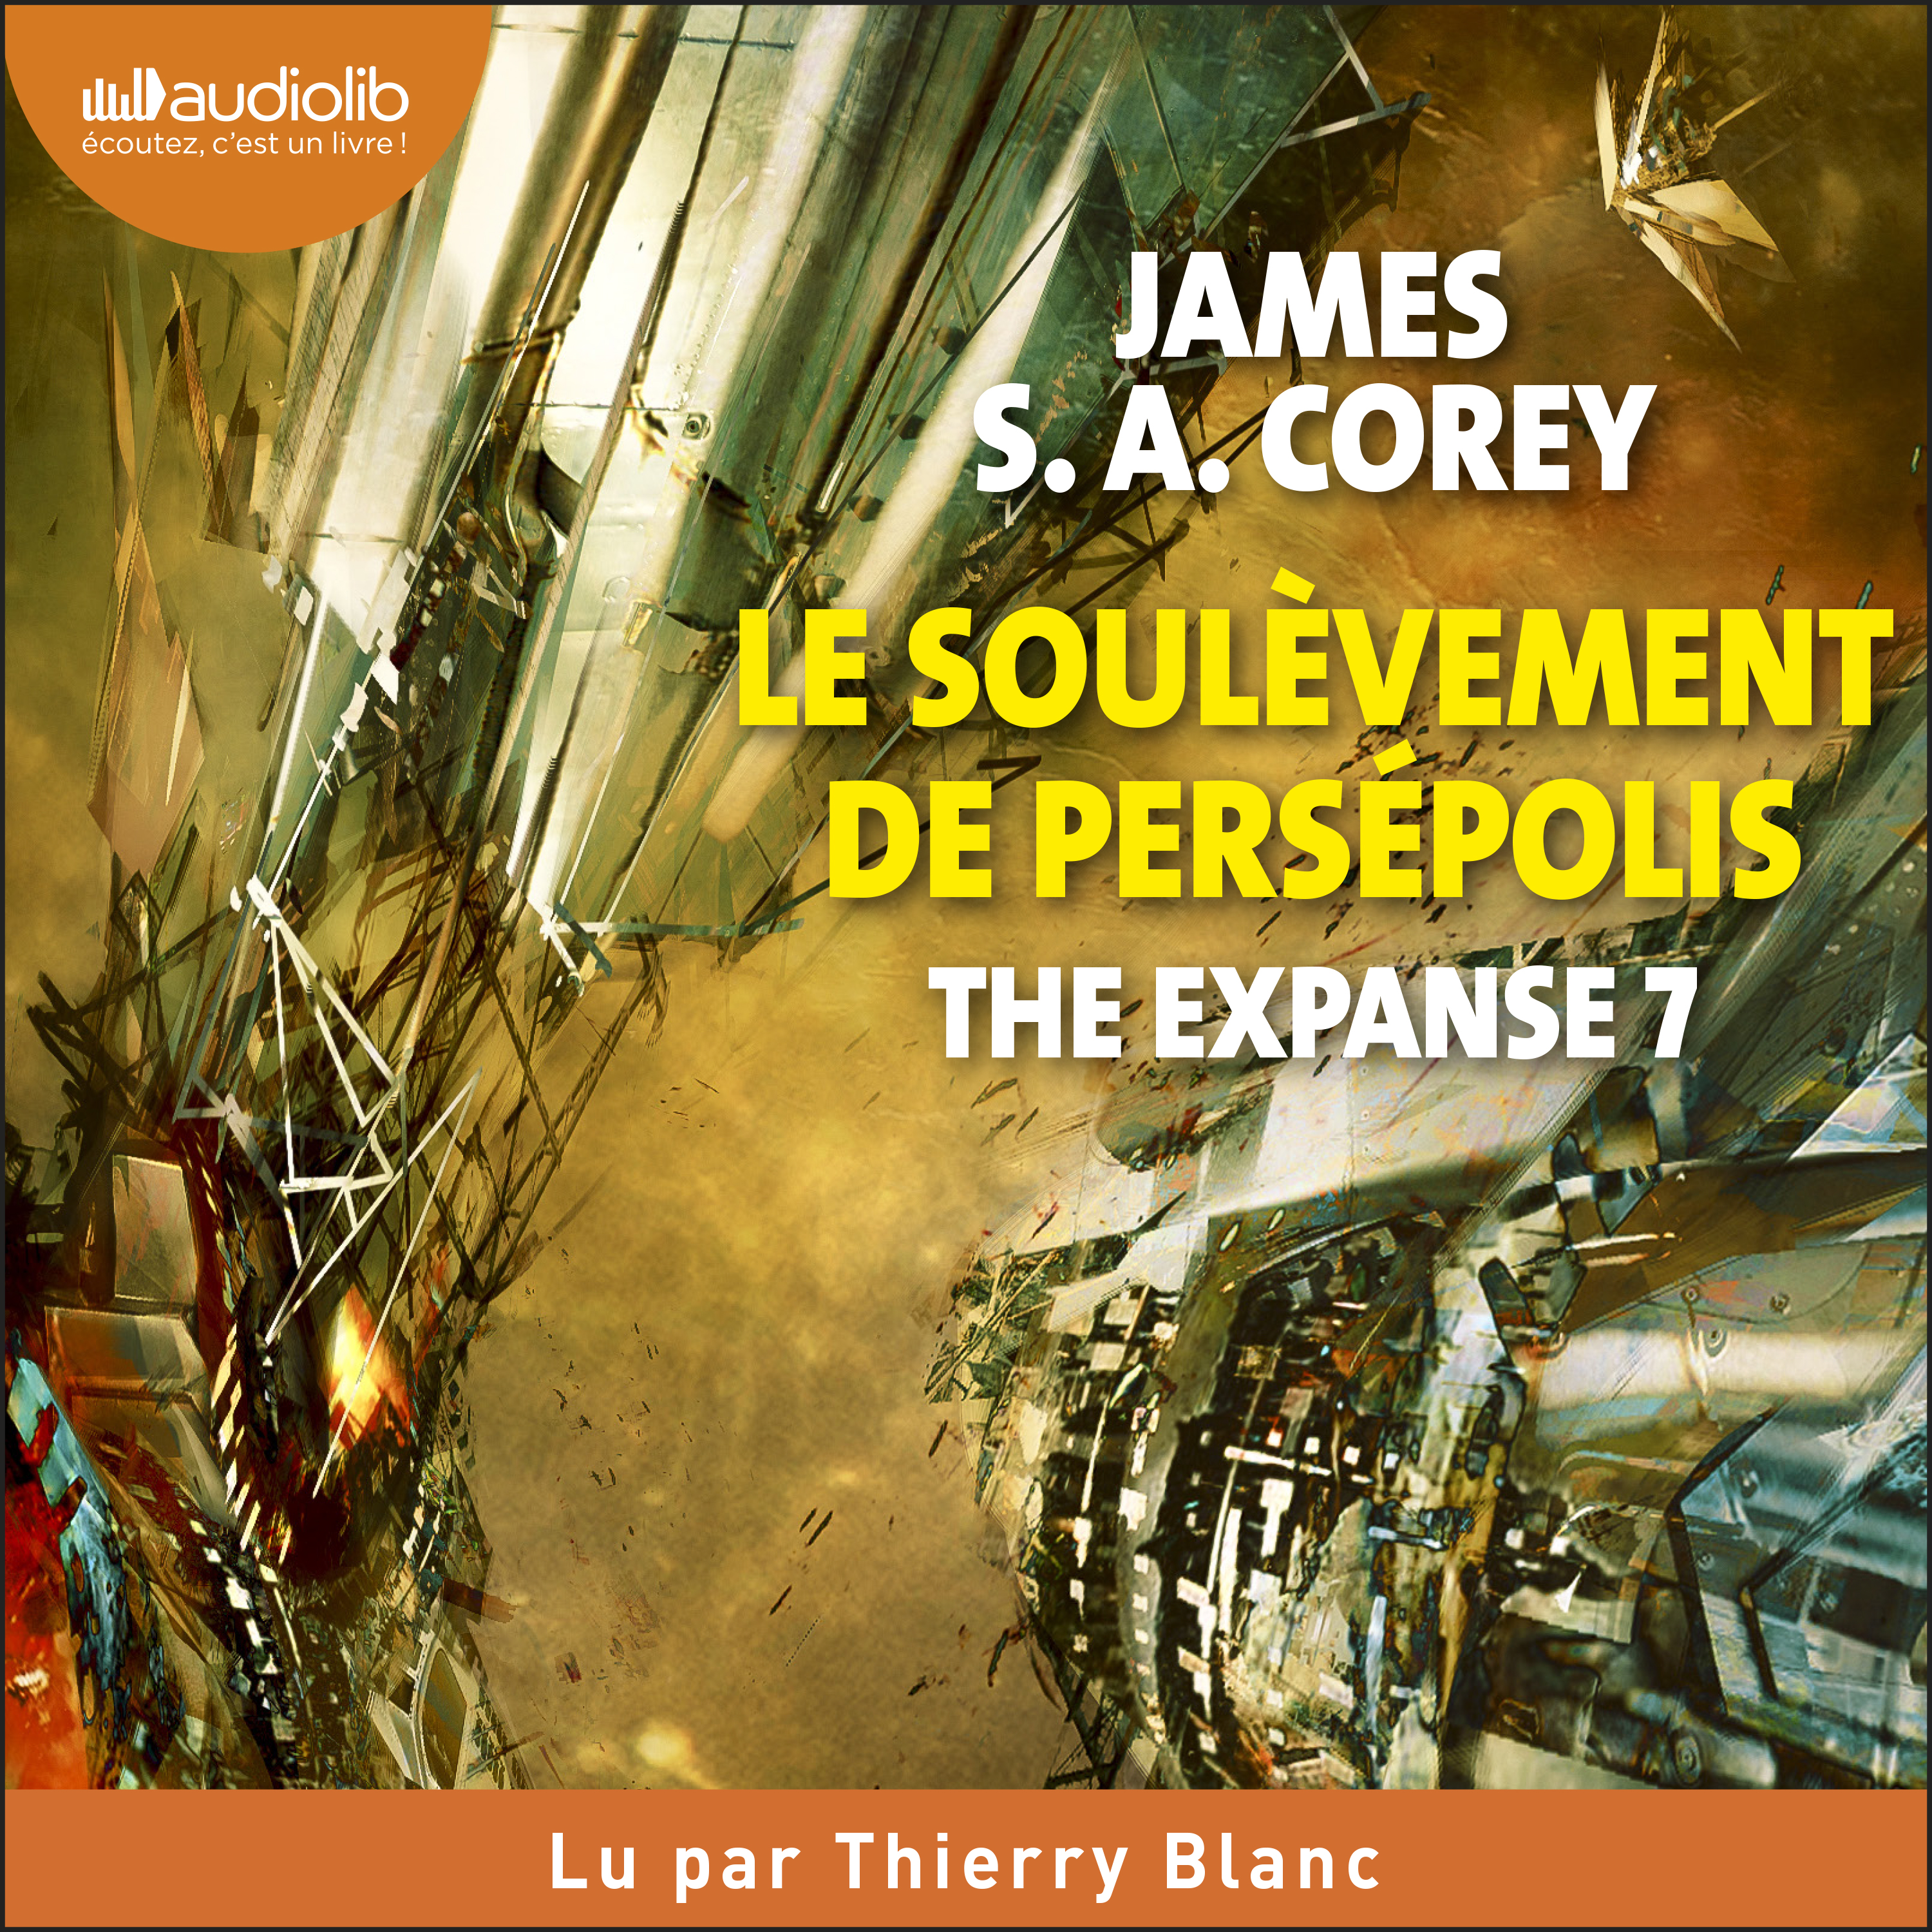 Couverture du livre audio The Expanse (Tome 7) - Le Soulèvement de Persépolis De James S.A. Corey 